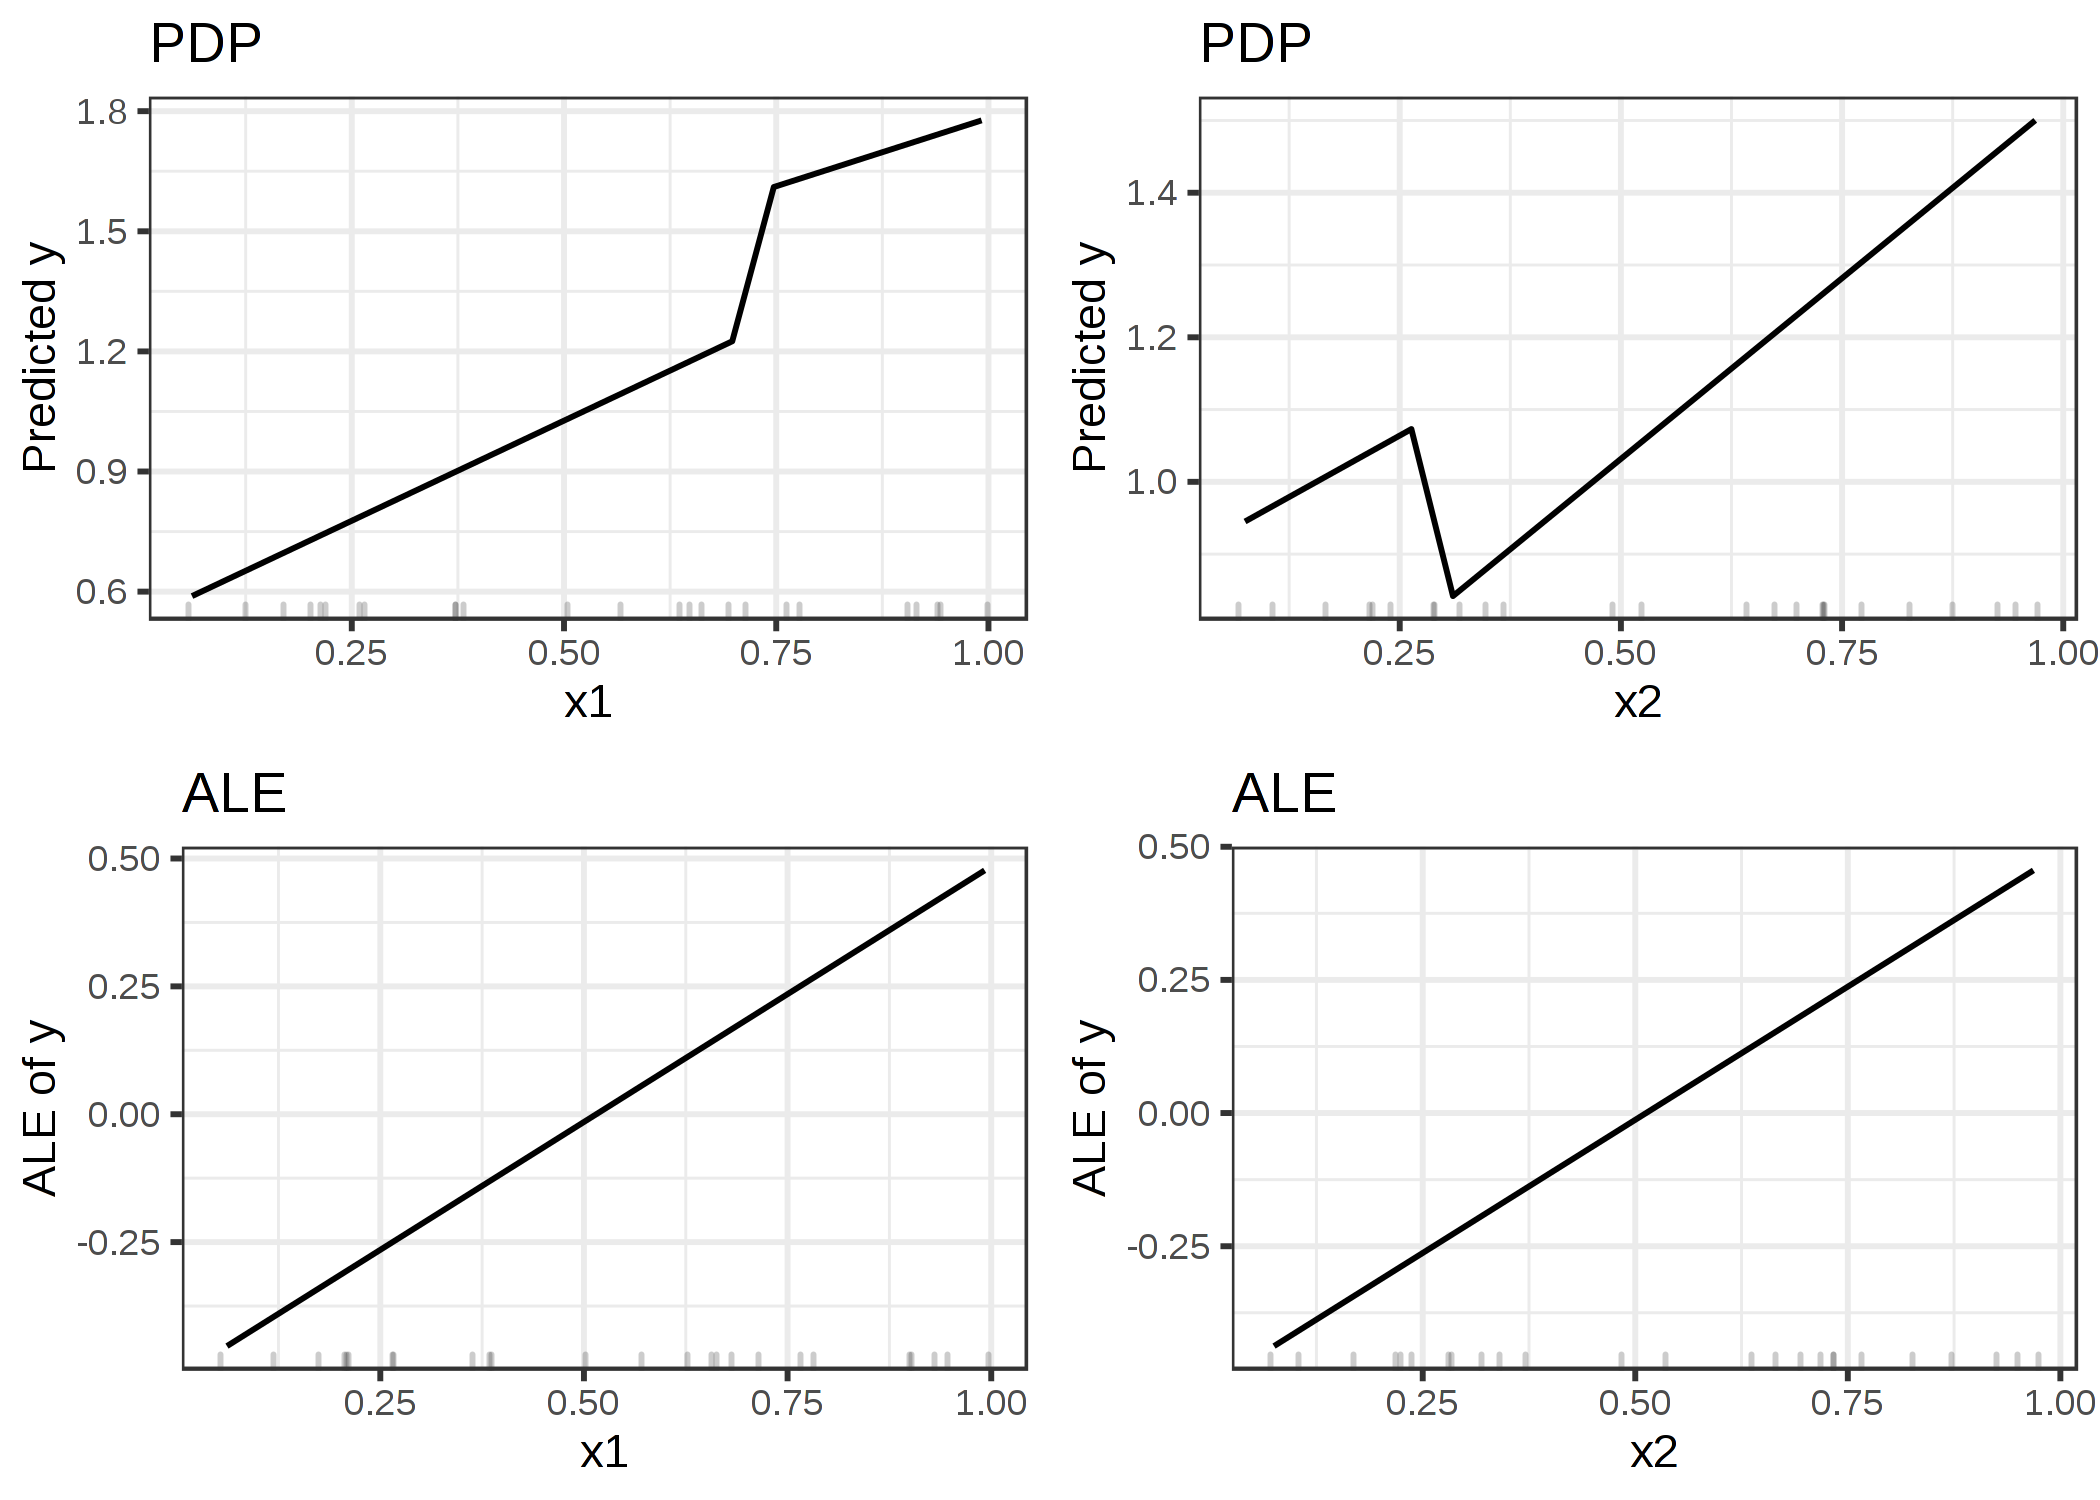 PDP(上の段)とALE(下の段)で計算される特徴量の影響の比較。 PDP の推定はデータ分布の外でモデルの奇妙な挙動に影響を受けている (プロットが跳ね上がっている)。ALE plot は機械学習モデルは特徴量と予測の間で関係が線形になっていると正しく認識できており、データがない領域を無視している。